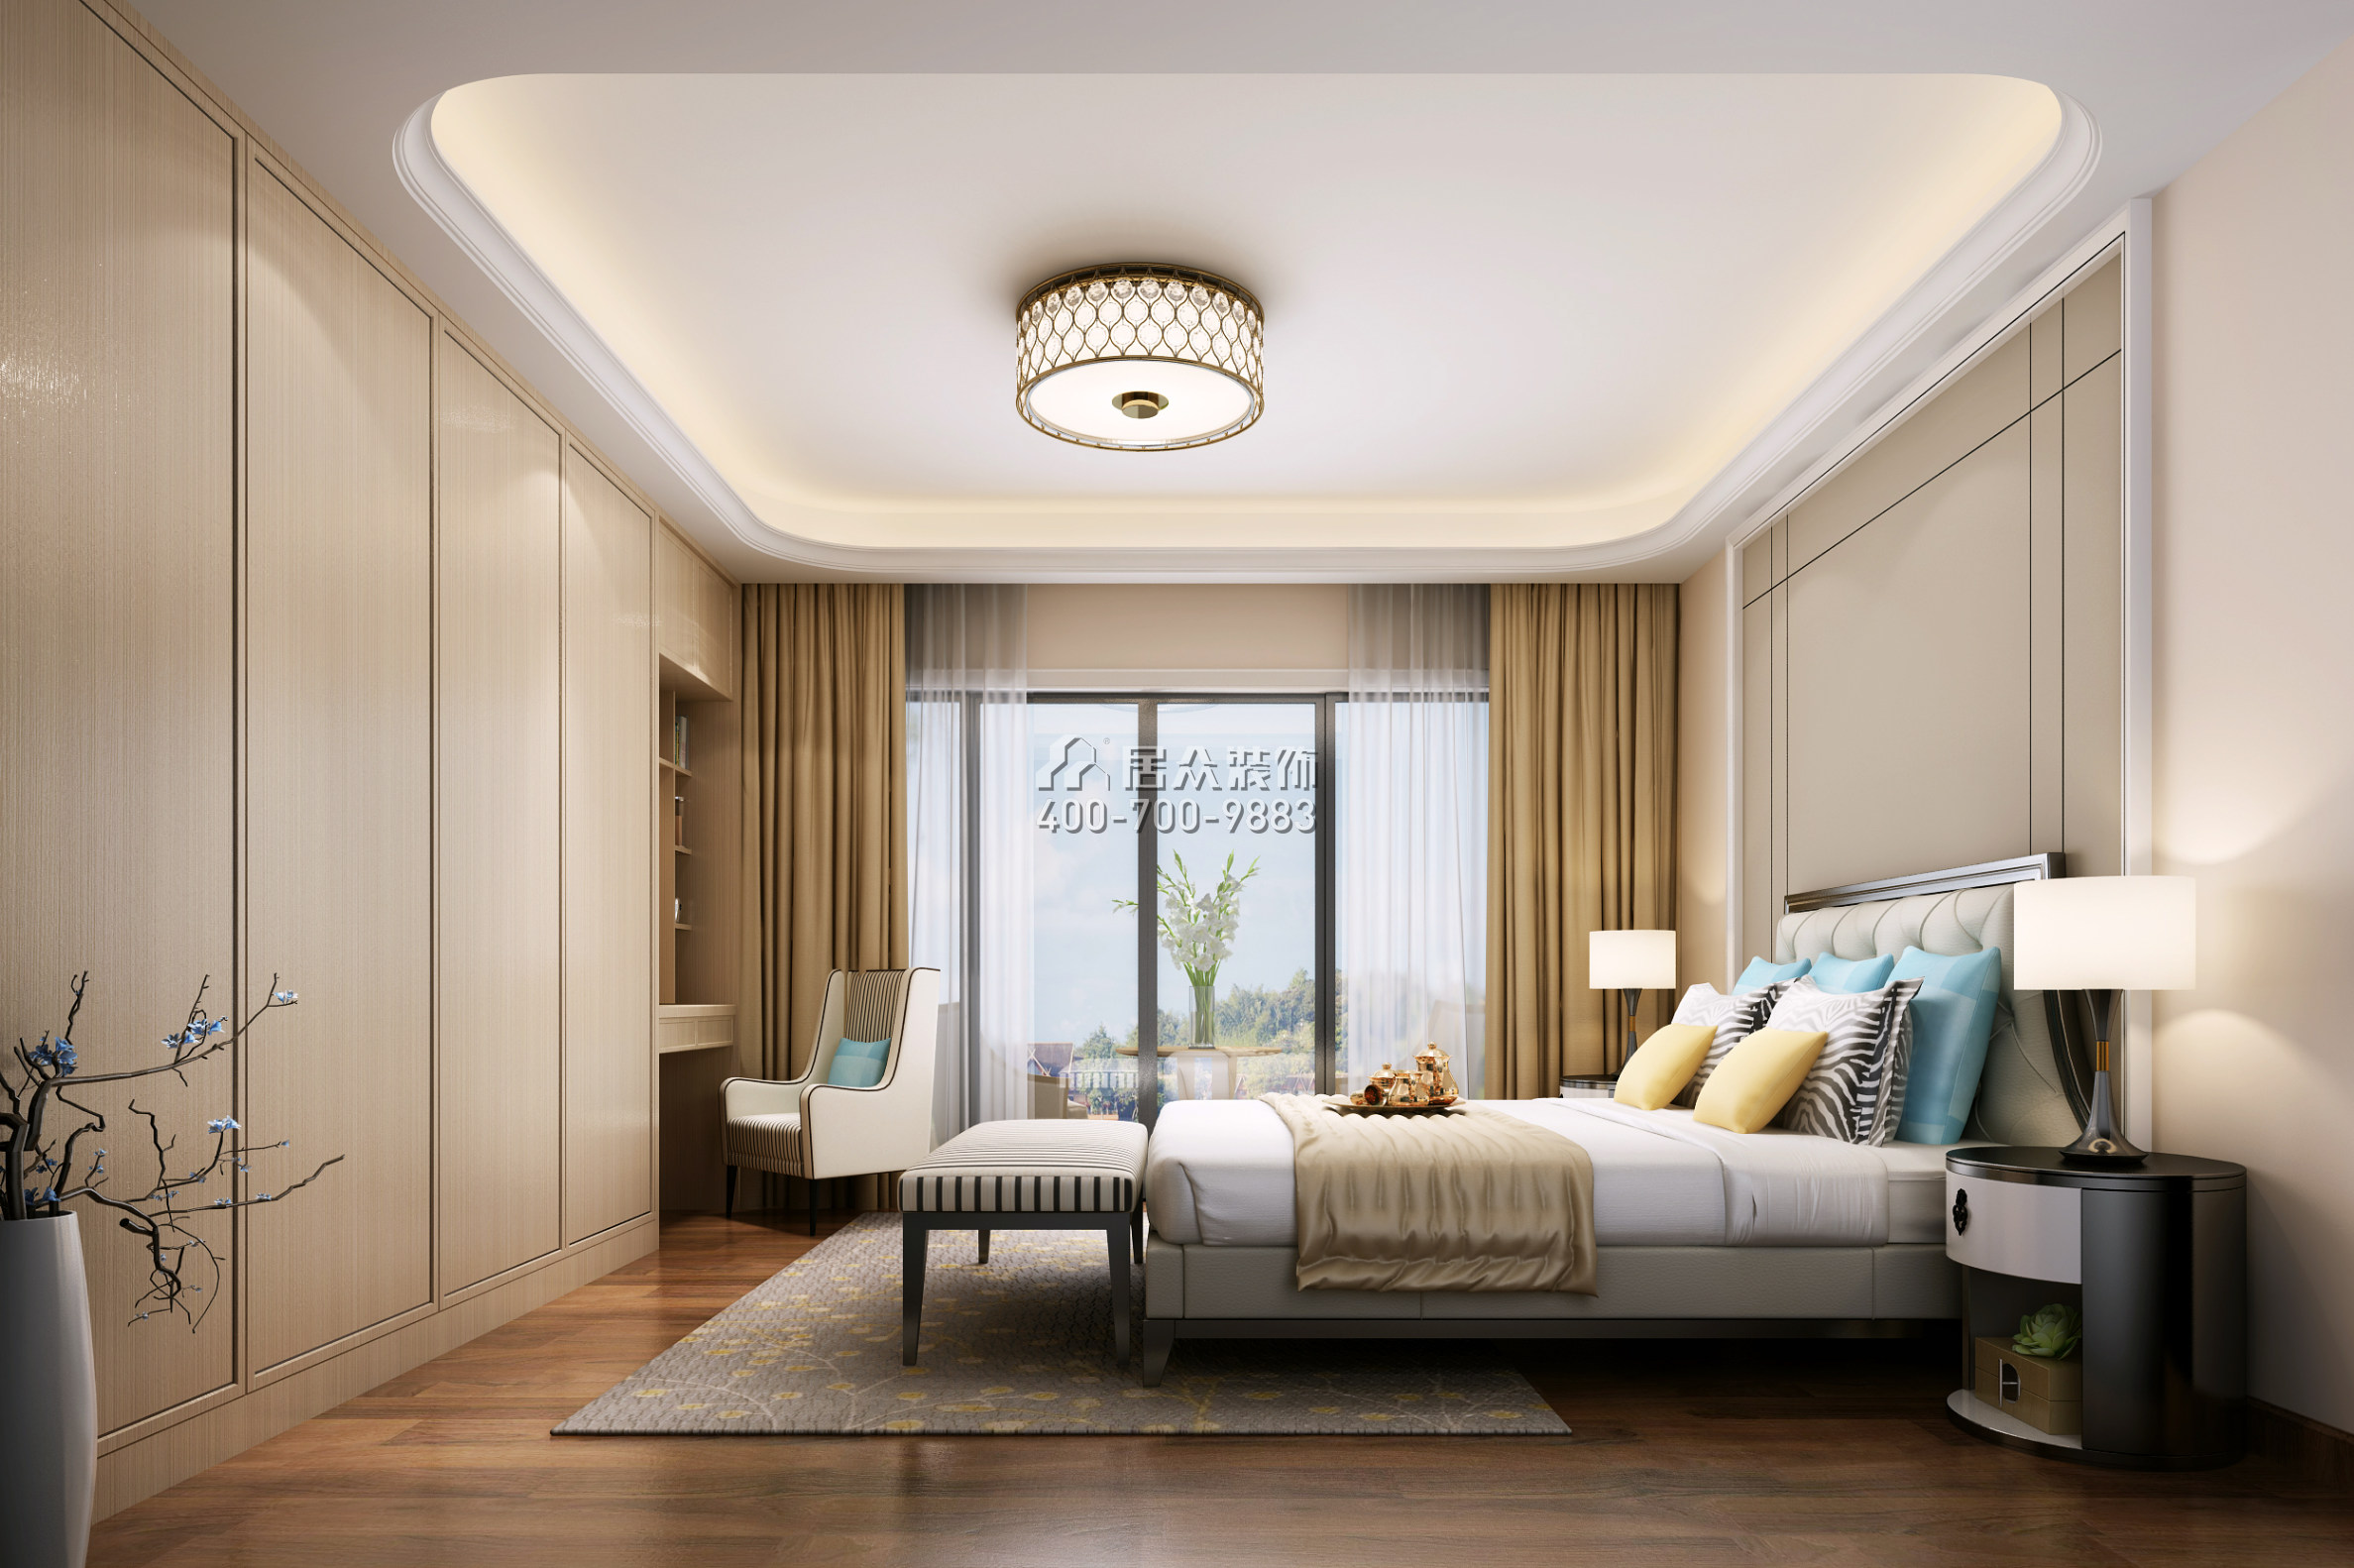 海逸豪庭尚都126平方米現代簡約風格復式戶型臥室裝修效果圖